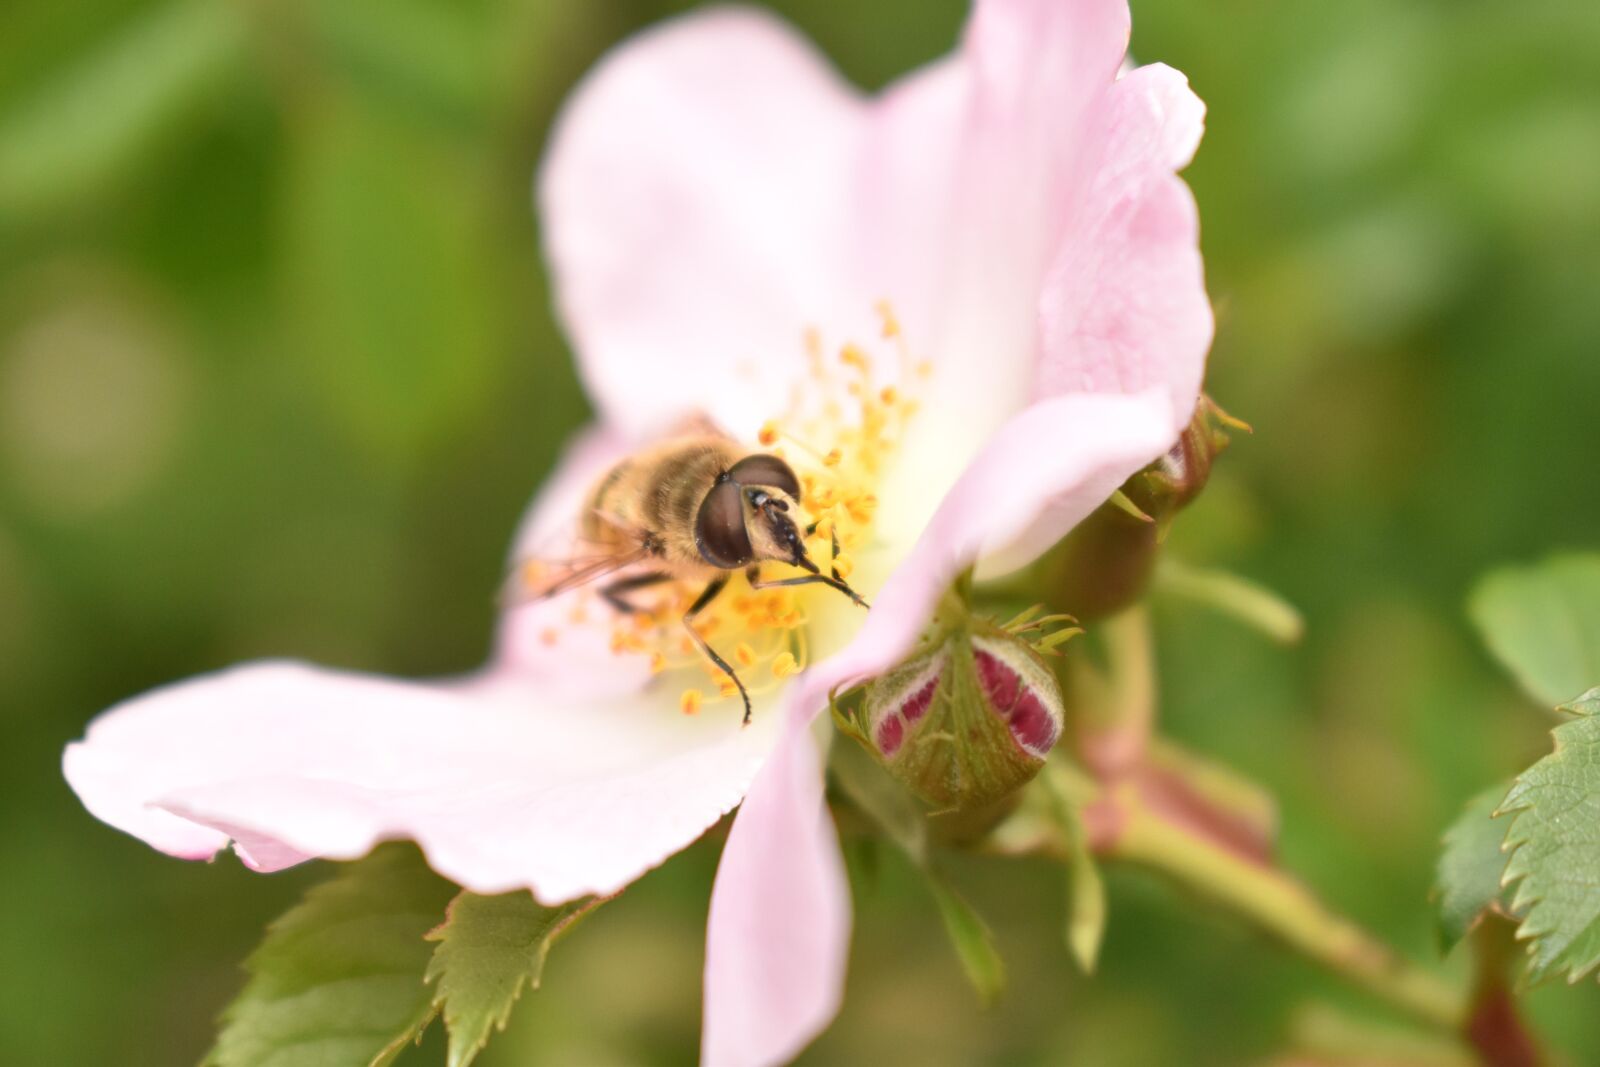 Nikon D3500 sample photo. Bi, bees, nature photography